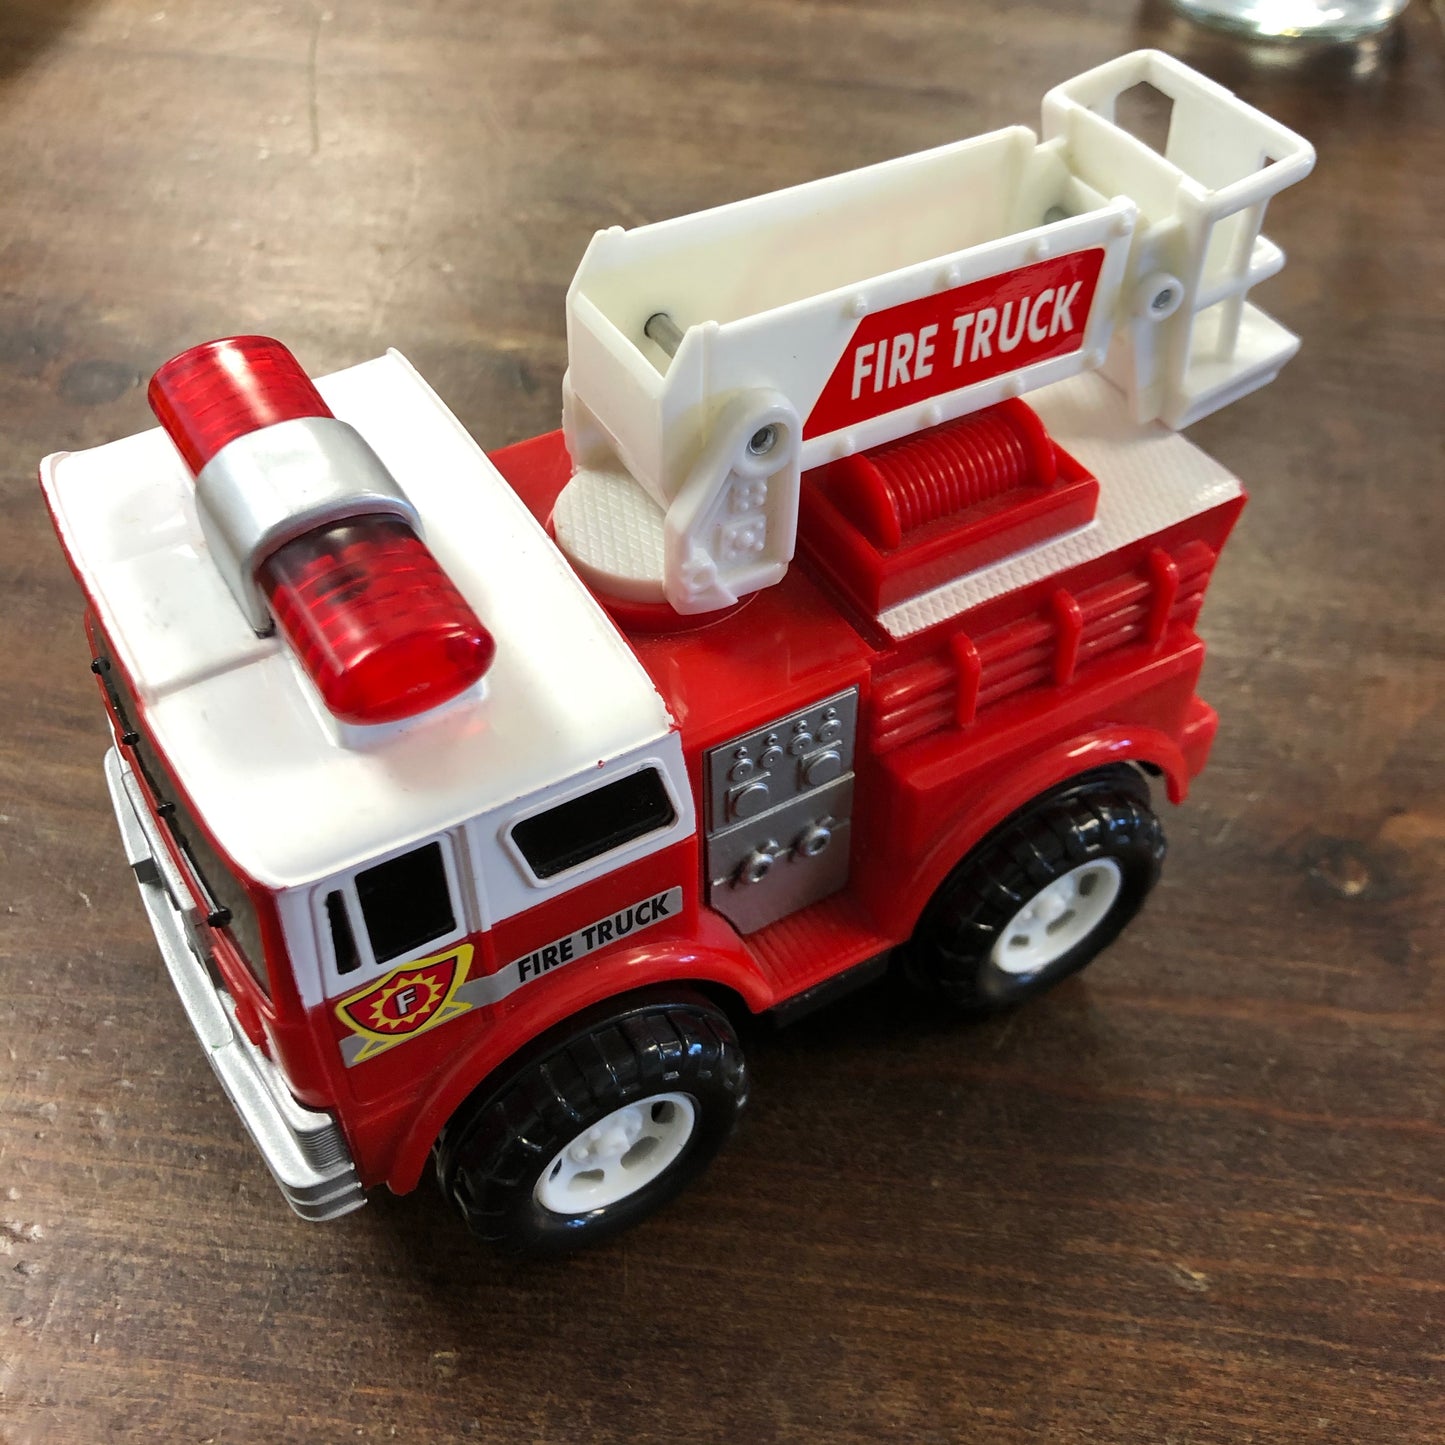 Little Fire Truck